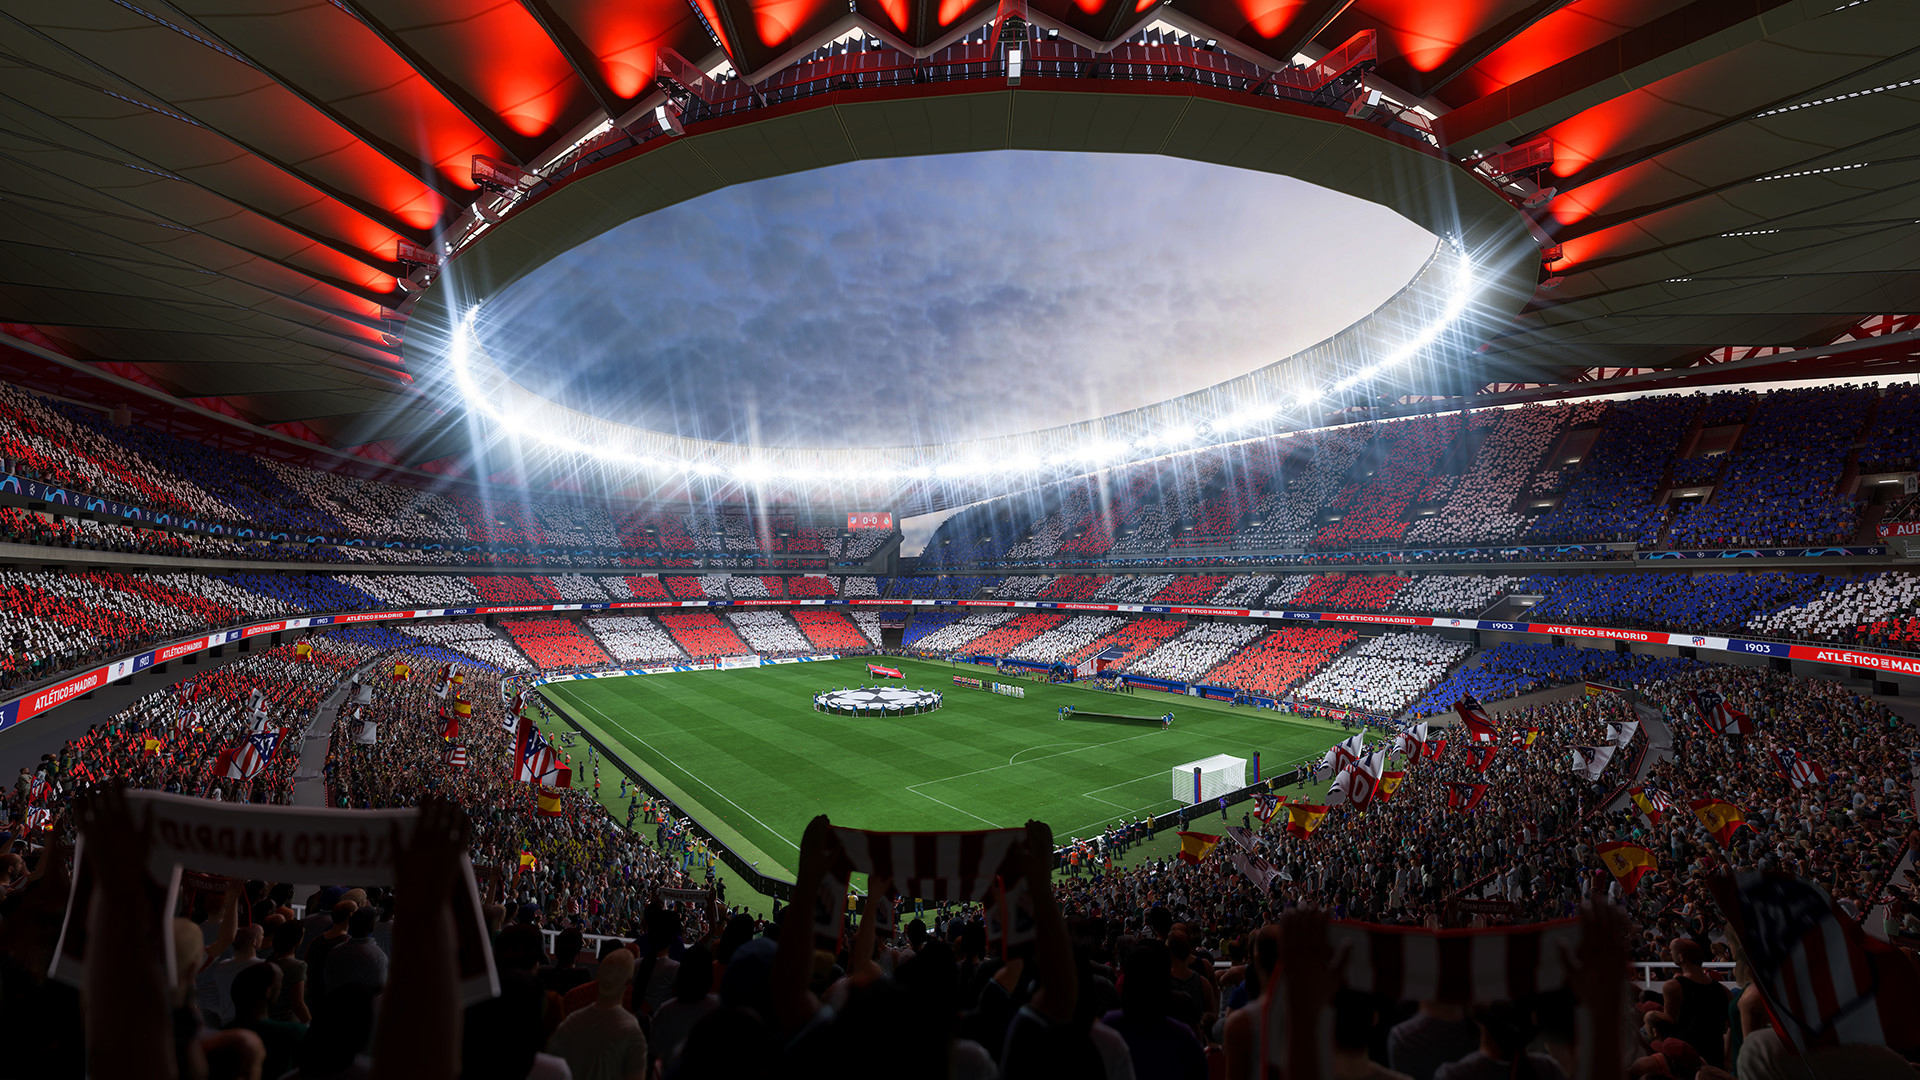 Jogo Fifa 2024 - Playstation 4 na loja HB Games no Paraguai 